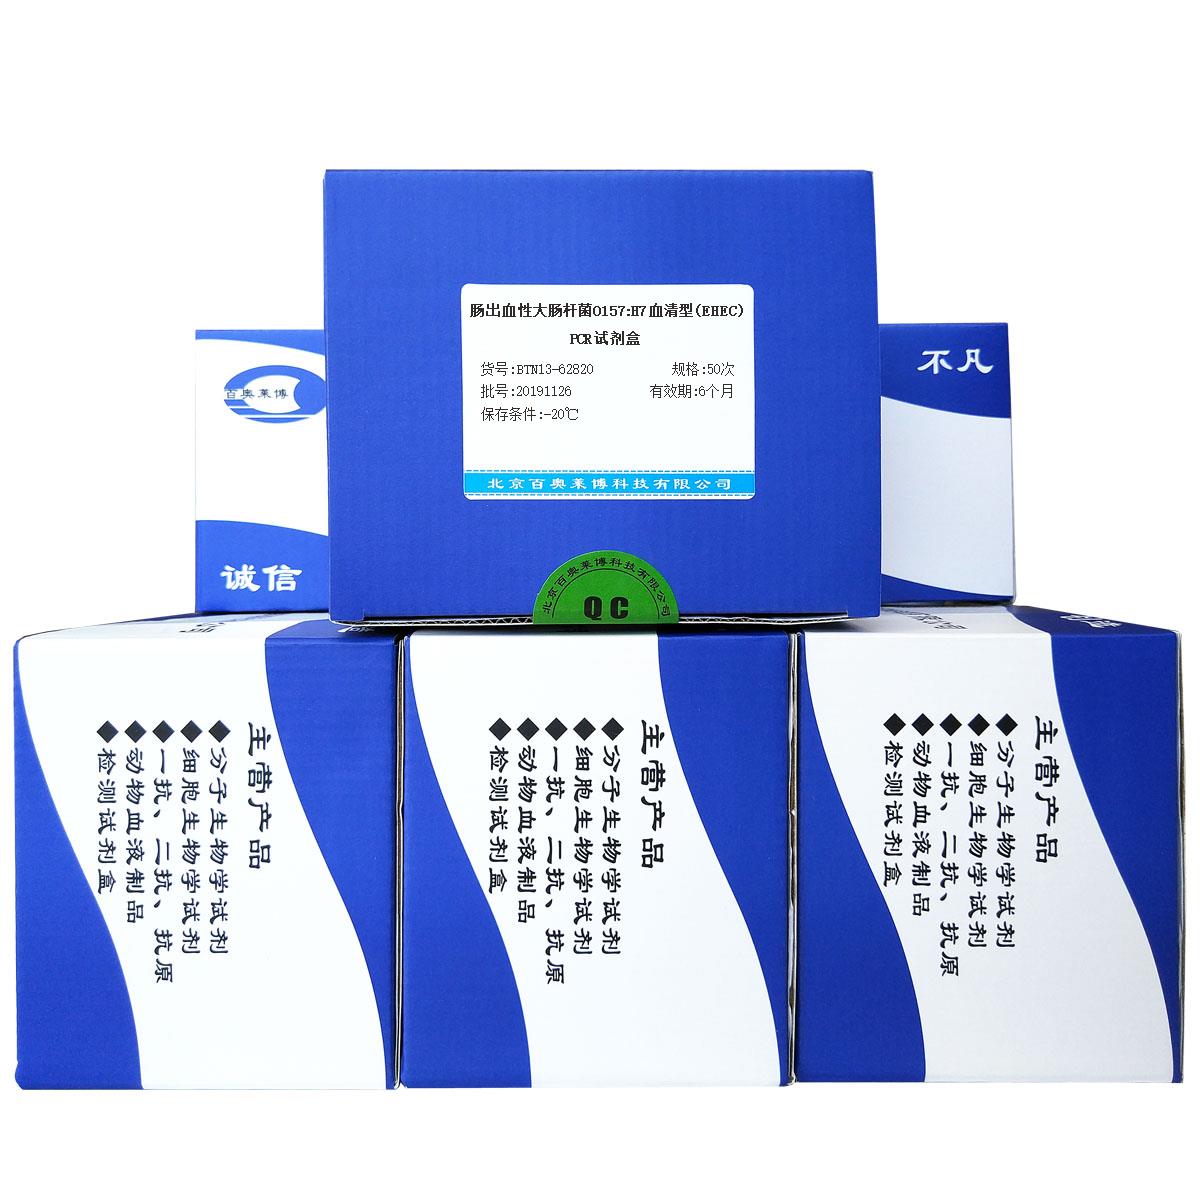 肠出血性大肠杆菌O157:H7血清型(EHEC)PCR试剂盒